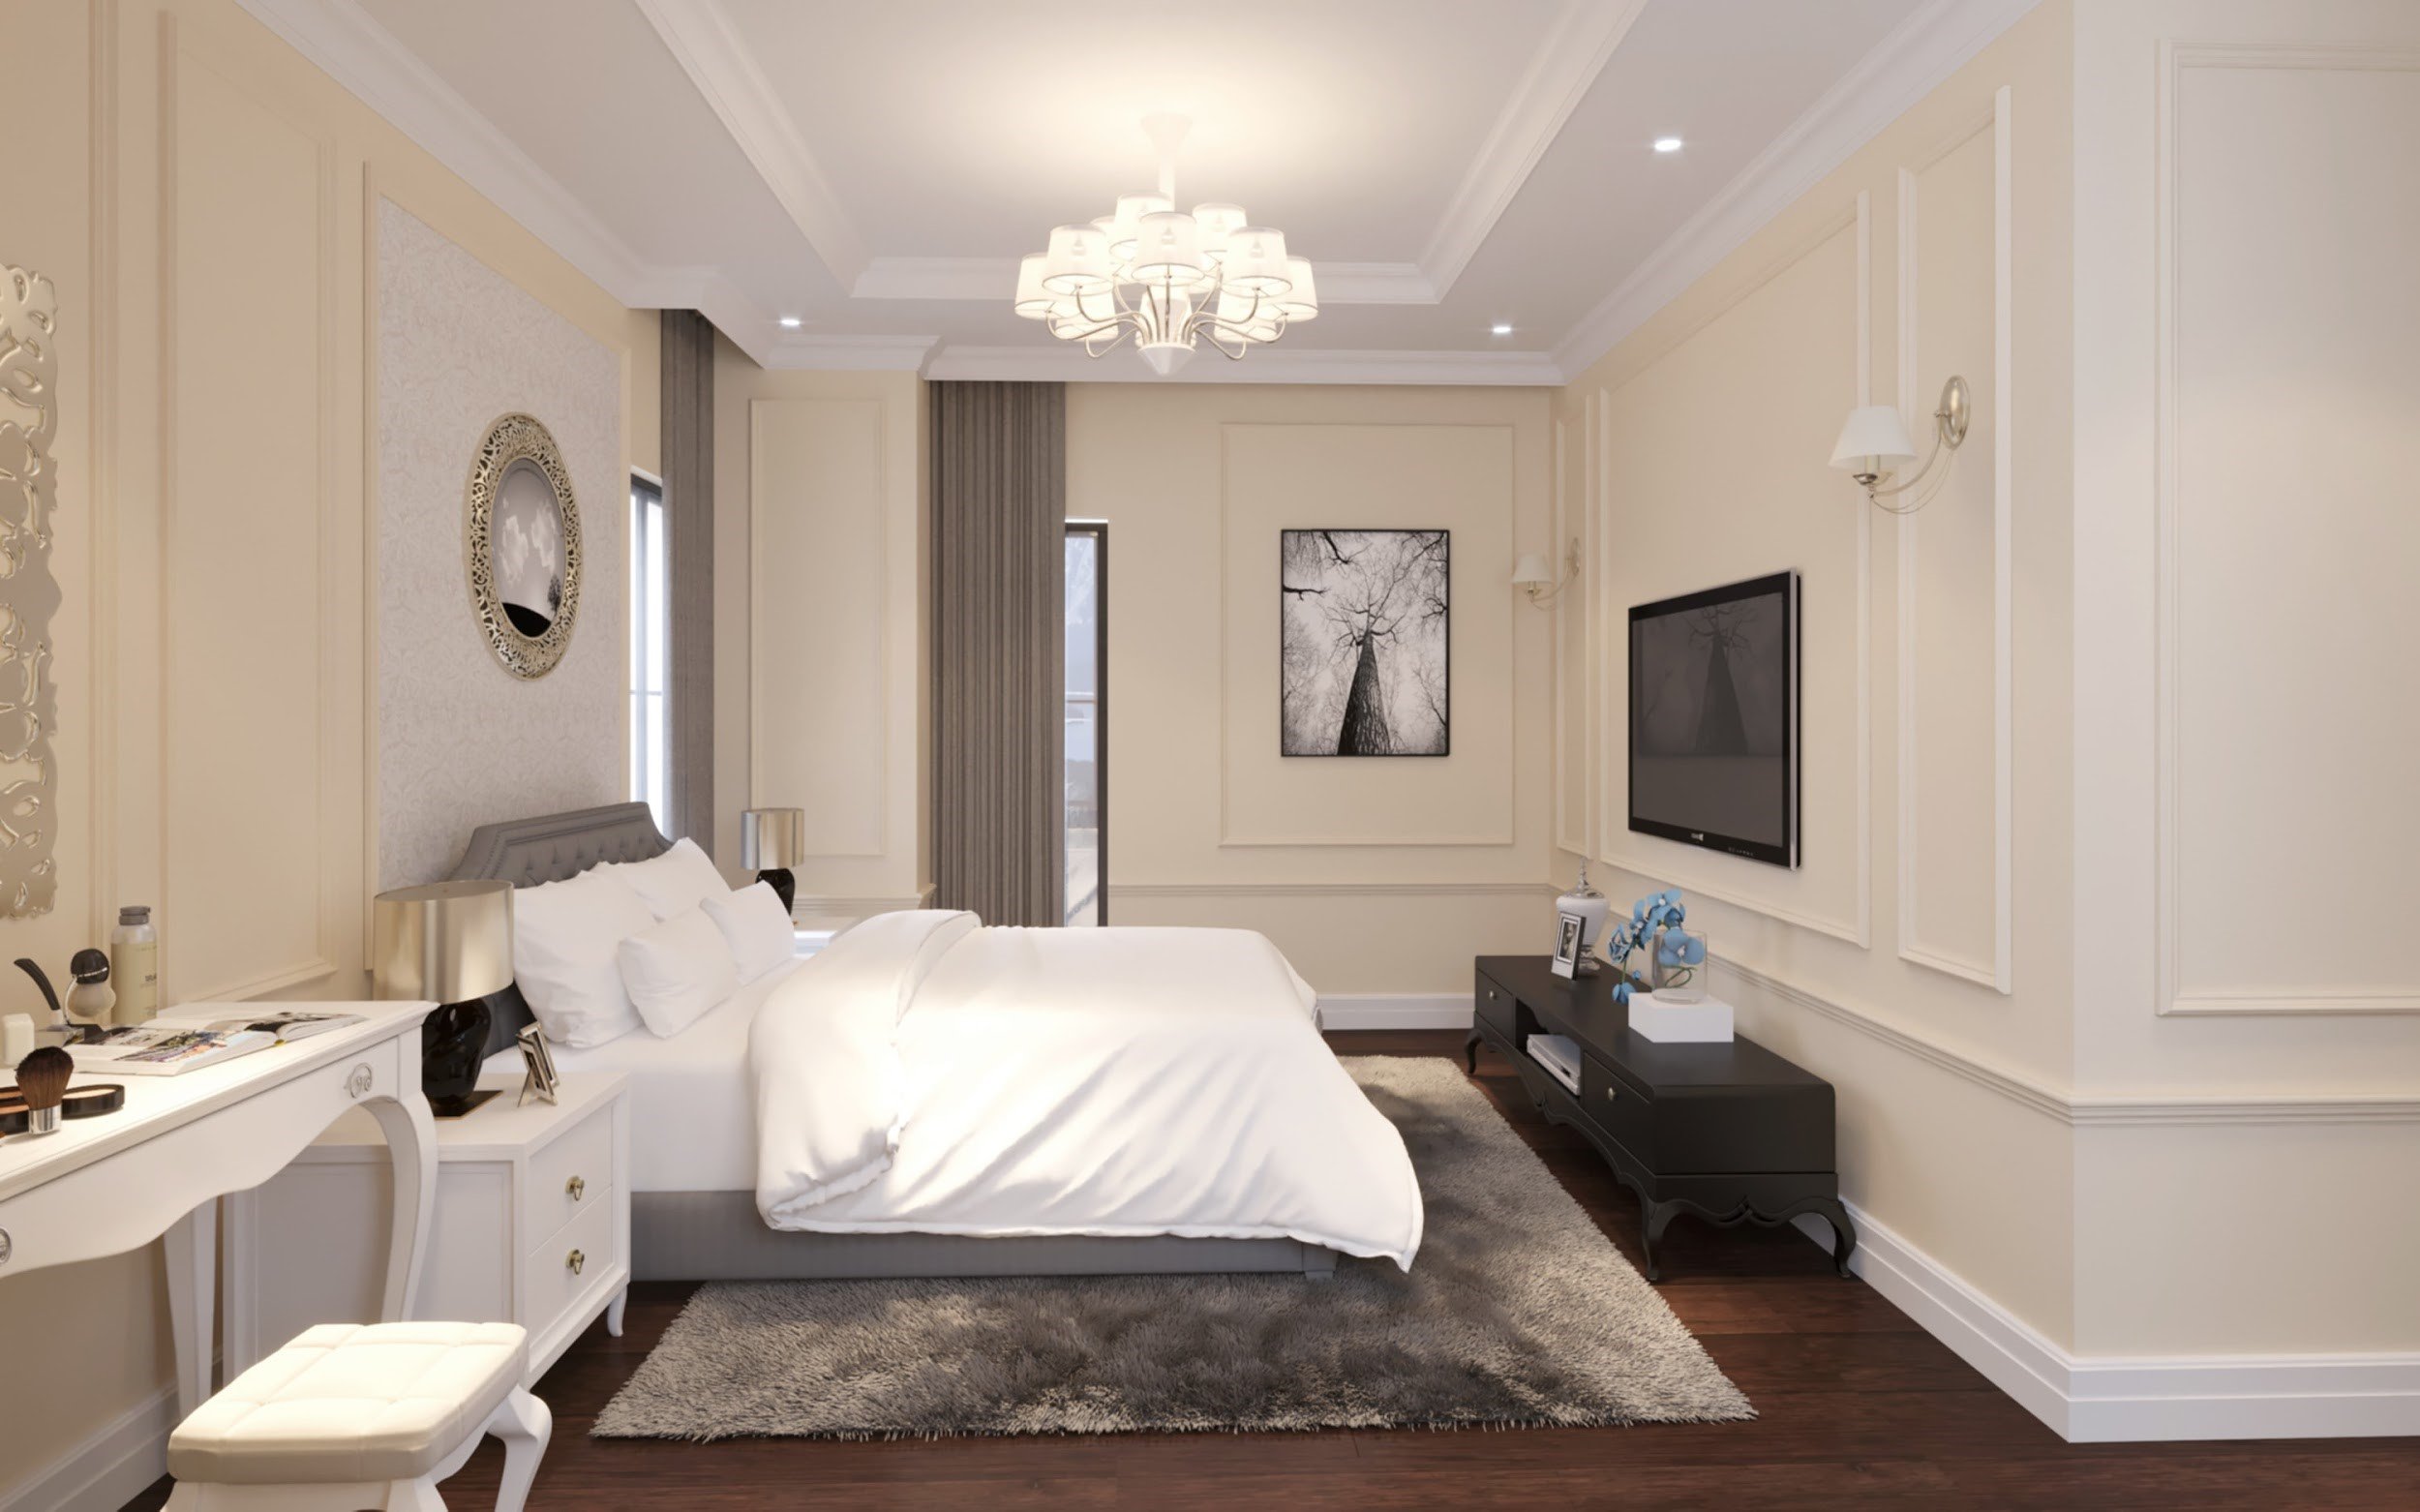 Hình 3. Có nhiều phong cách trang trí nội thất phòng ngủ đơn giản mà hiện đại